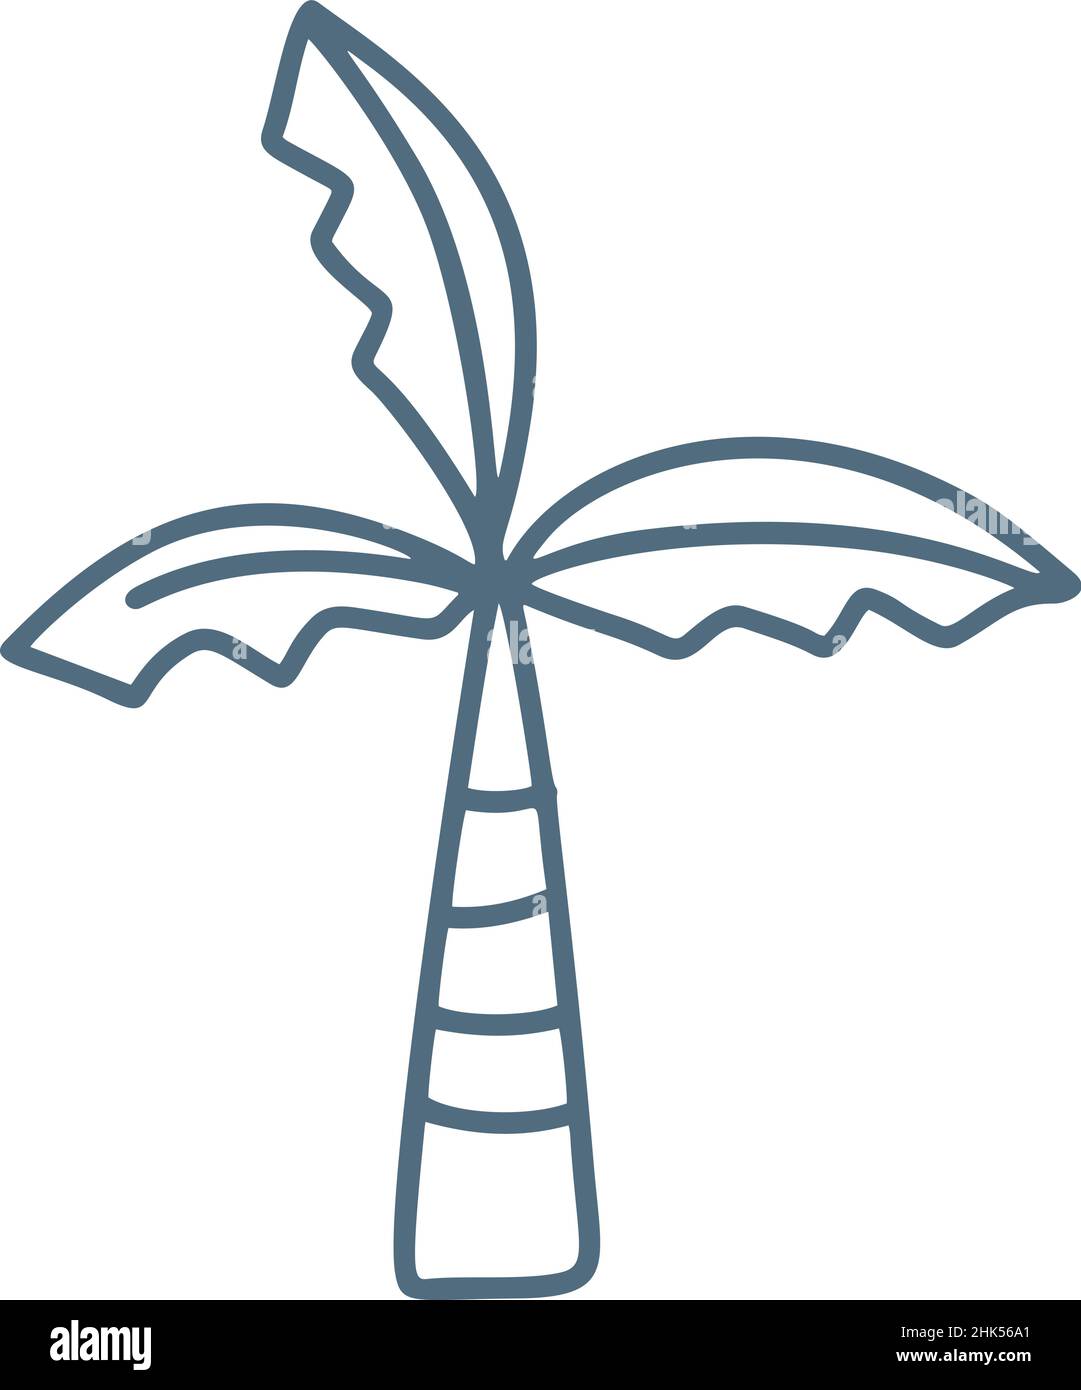 Monolina linea palma illustrazione in stile vettoriale scandinavo. Icona disegnata a mano. Carina illustrazione per bambini su sfondo bianco Illustrazione Vettoriale